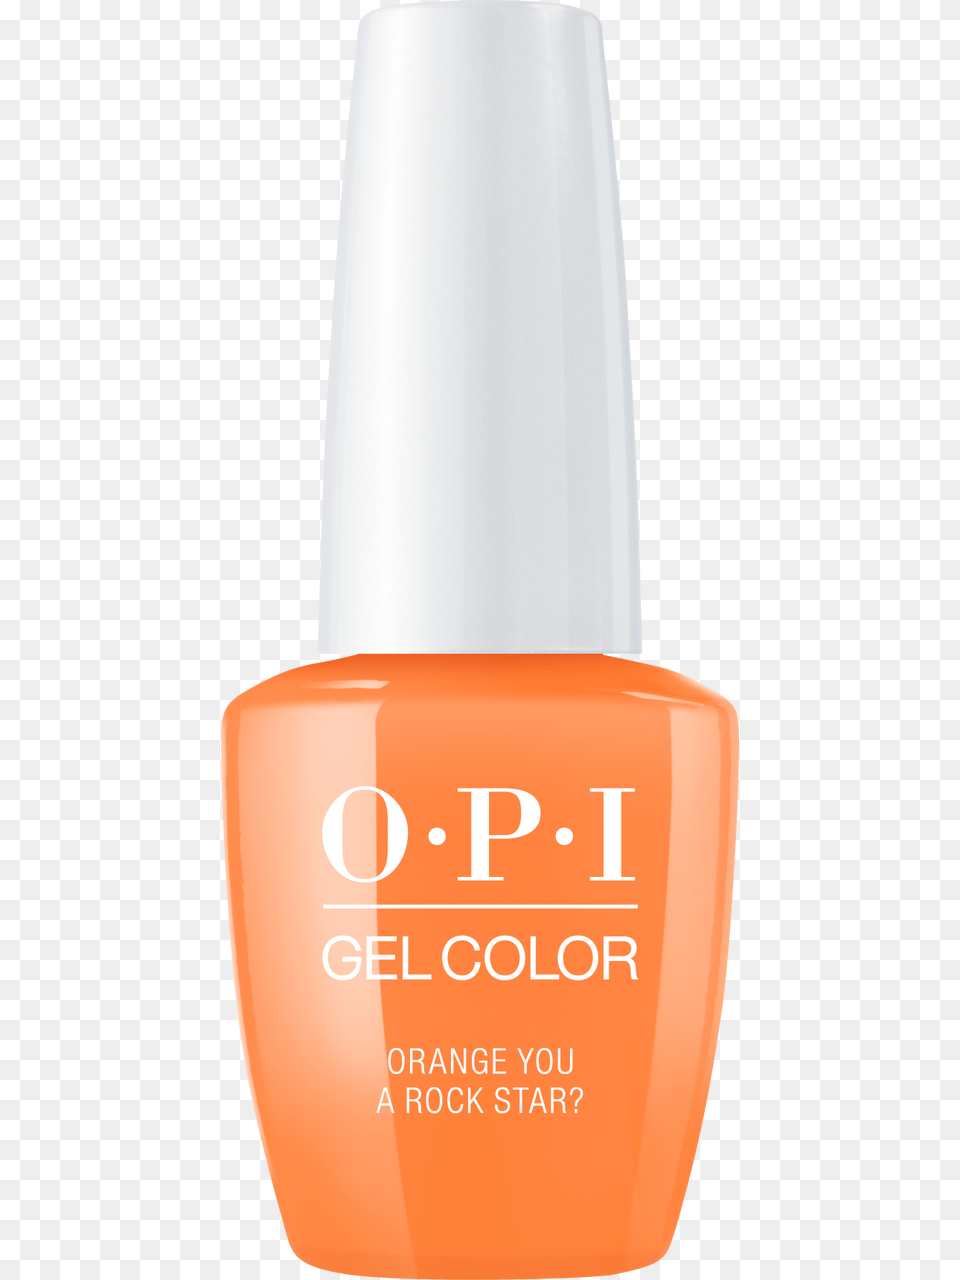 Opi Gelcolor Nail Polish, Cosmetics, Nail Polish Free Transparent Png